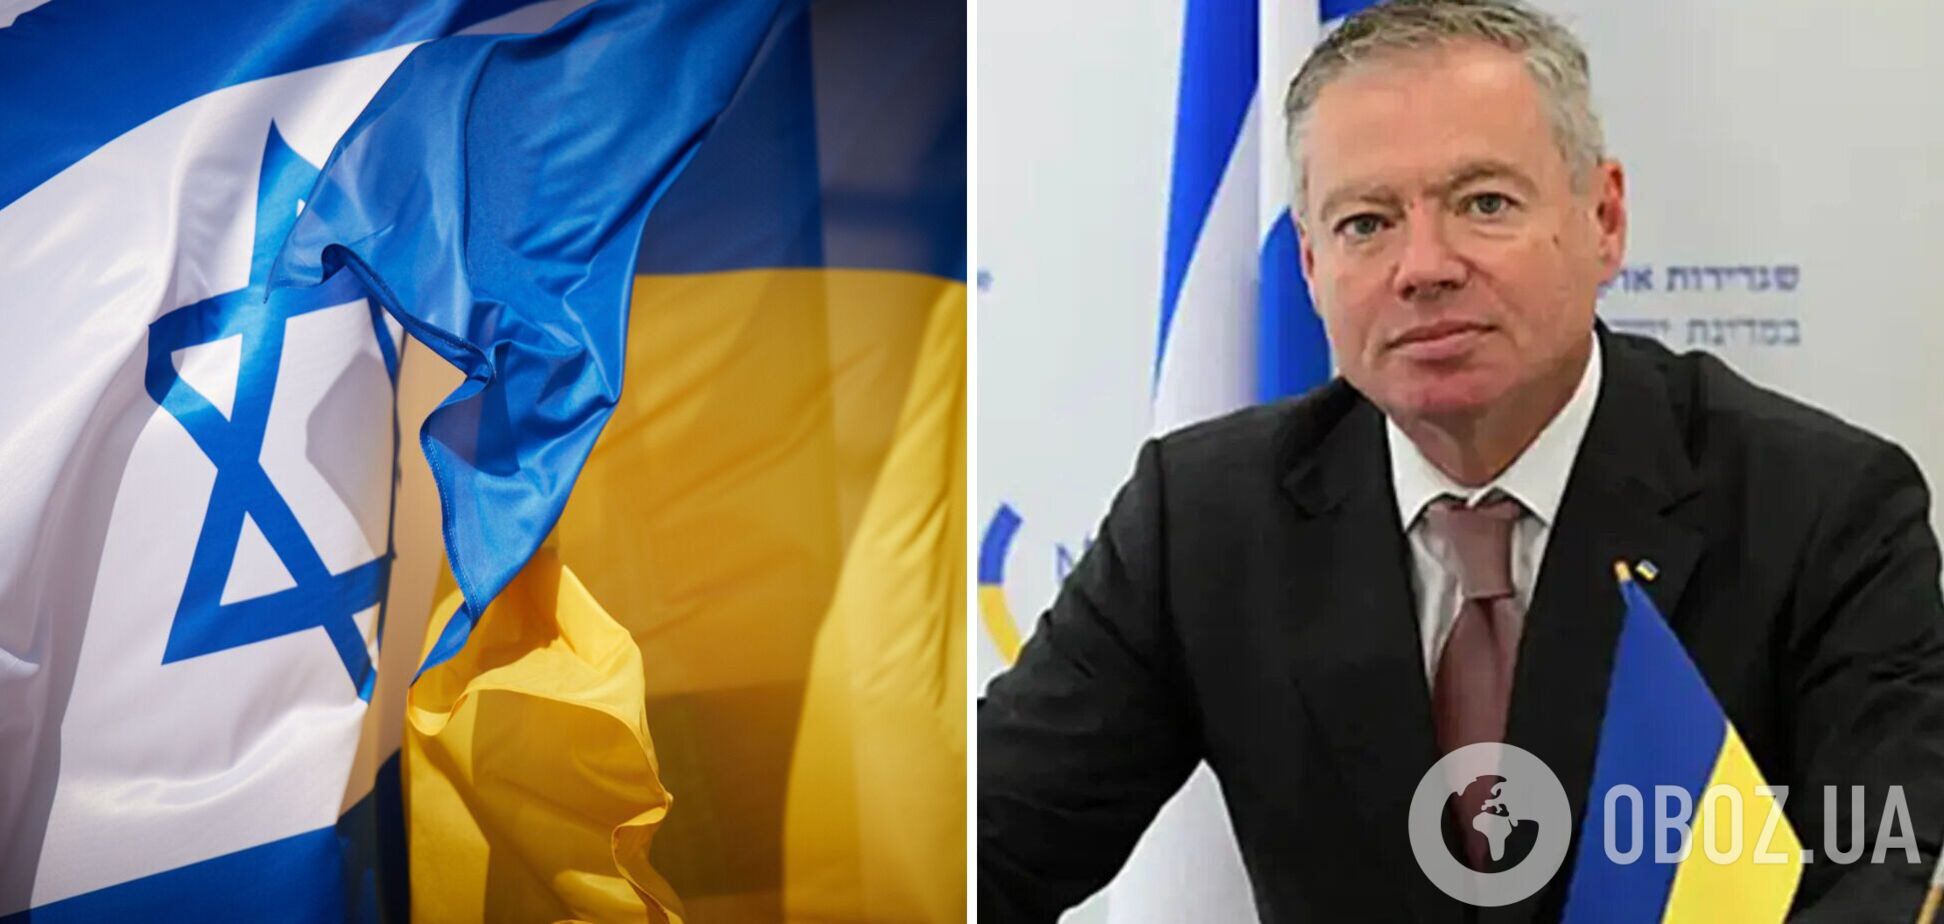 'Слов недостаточно': посол Корнийчук призвал Израиль оказать реальную военную помощь Украине